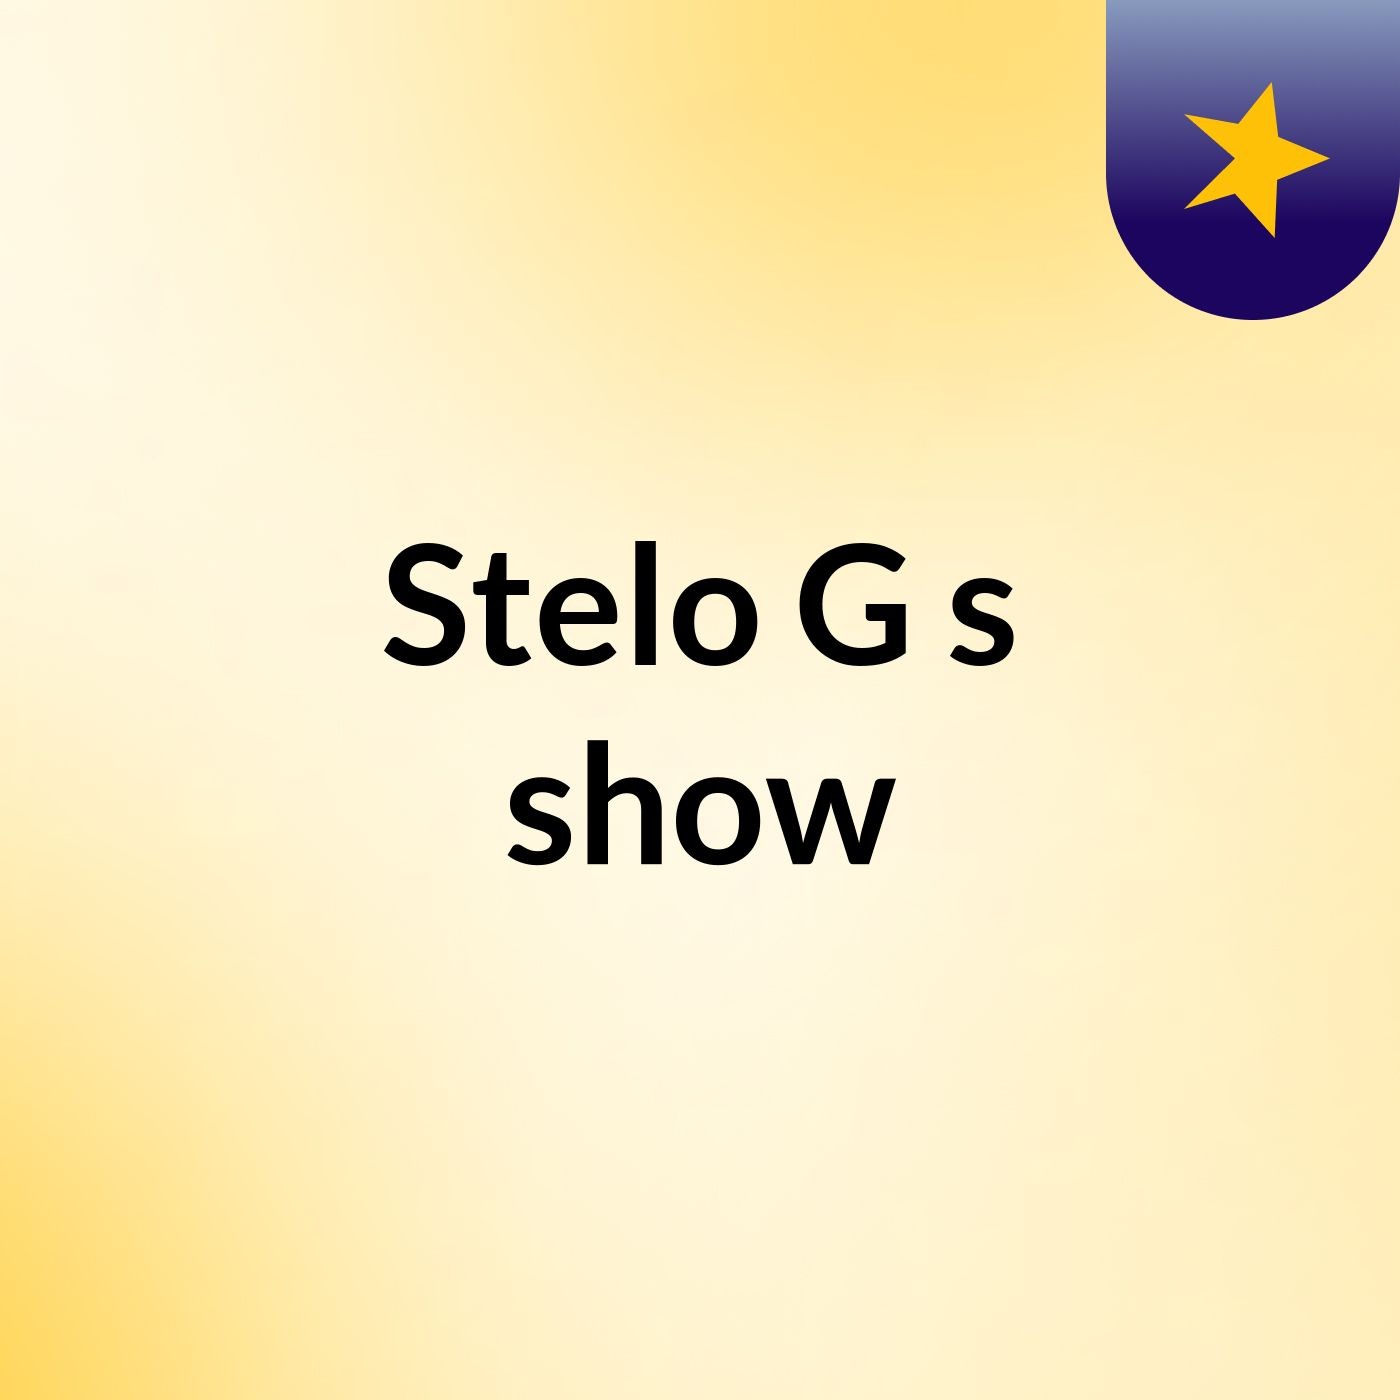 Stelo G's show